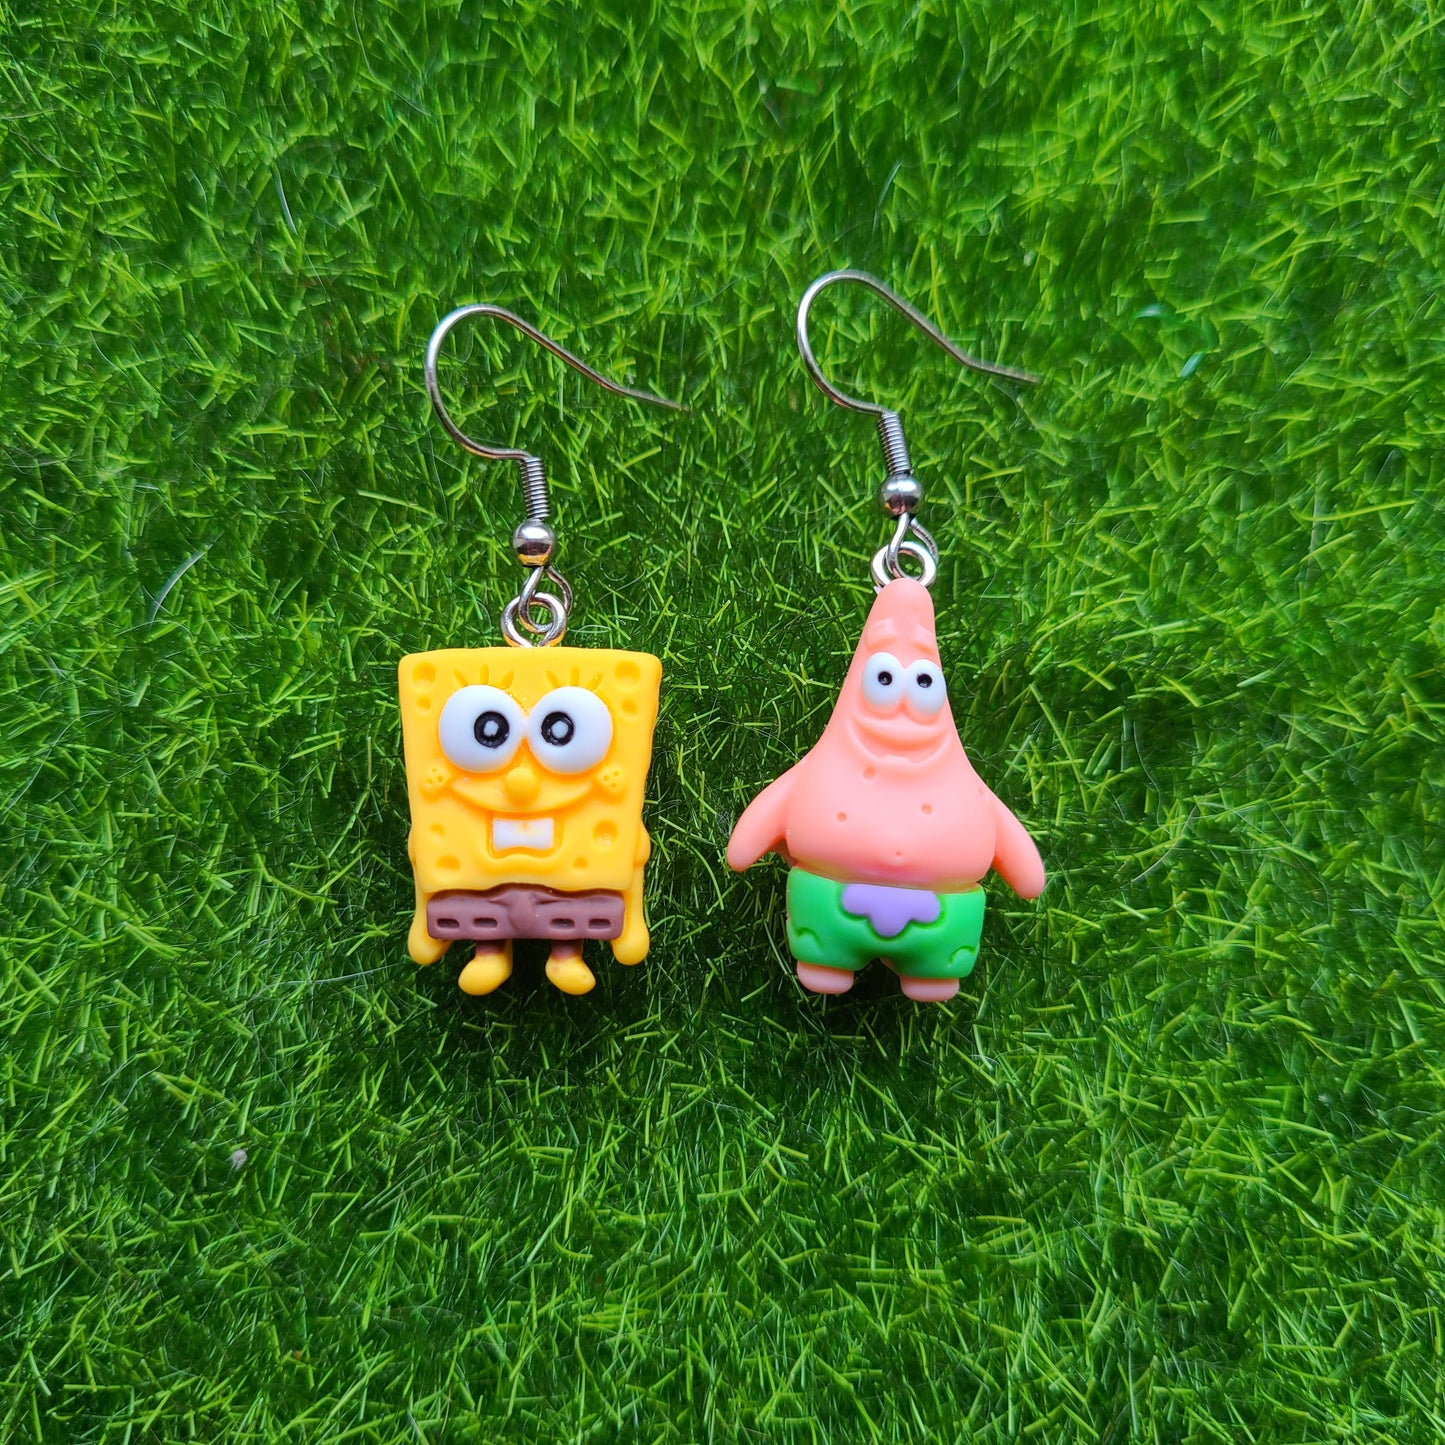 Spongebob Squarepants and Patrick Star Earrings